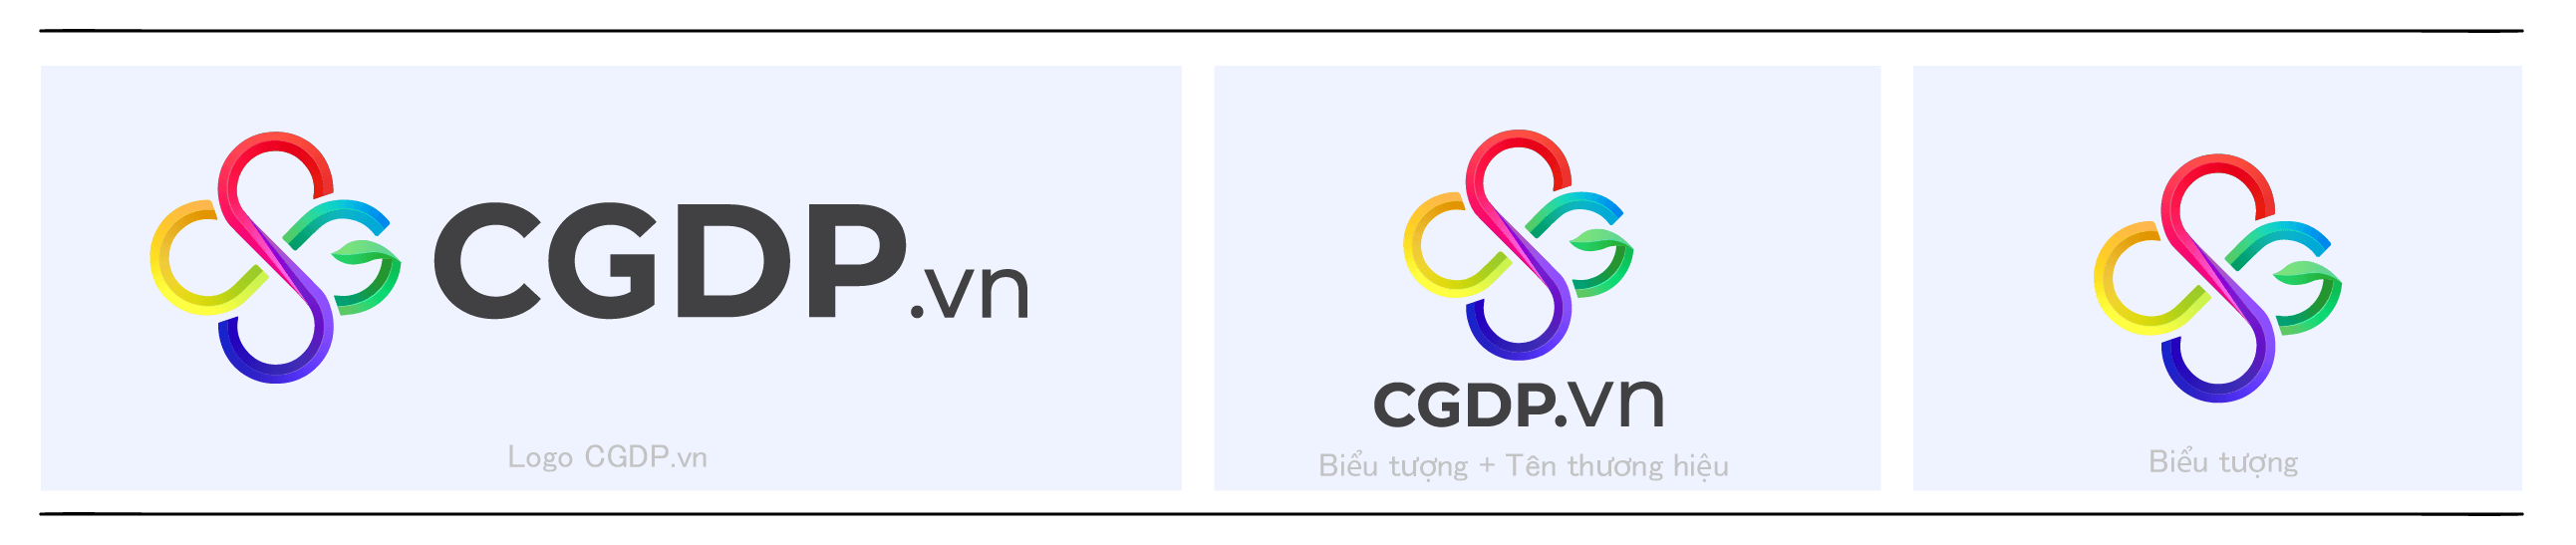 Logo CGDP.vn chuẩn